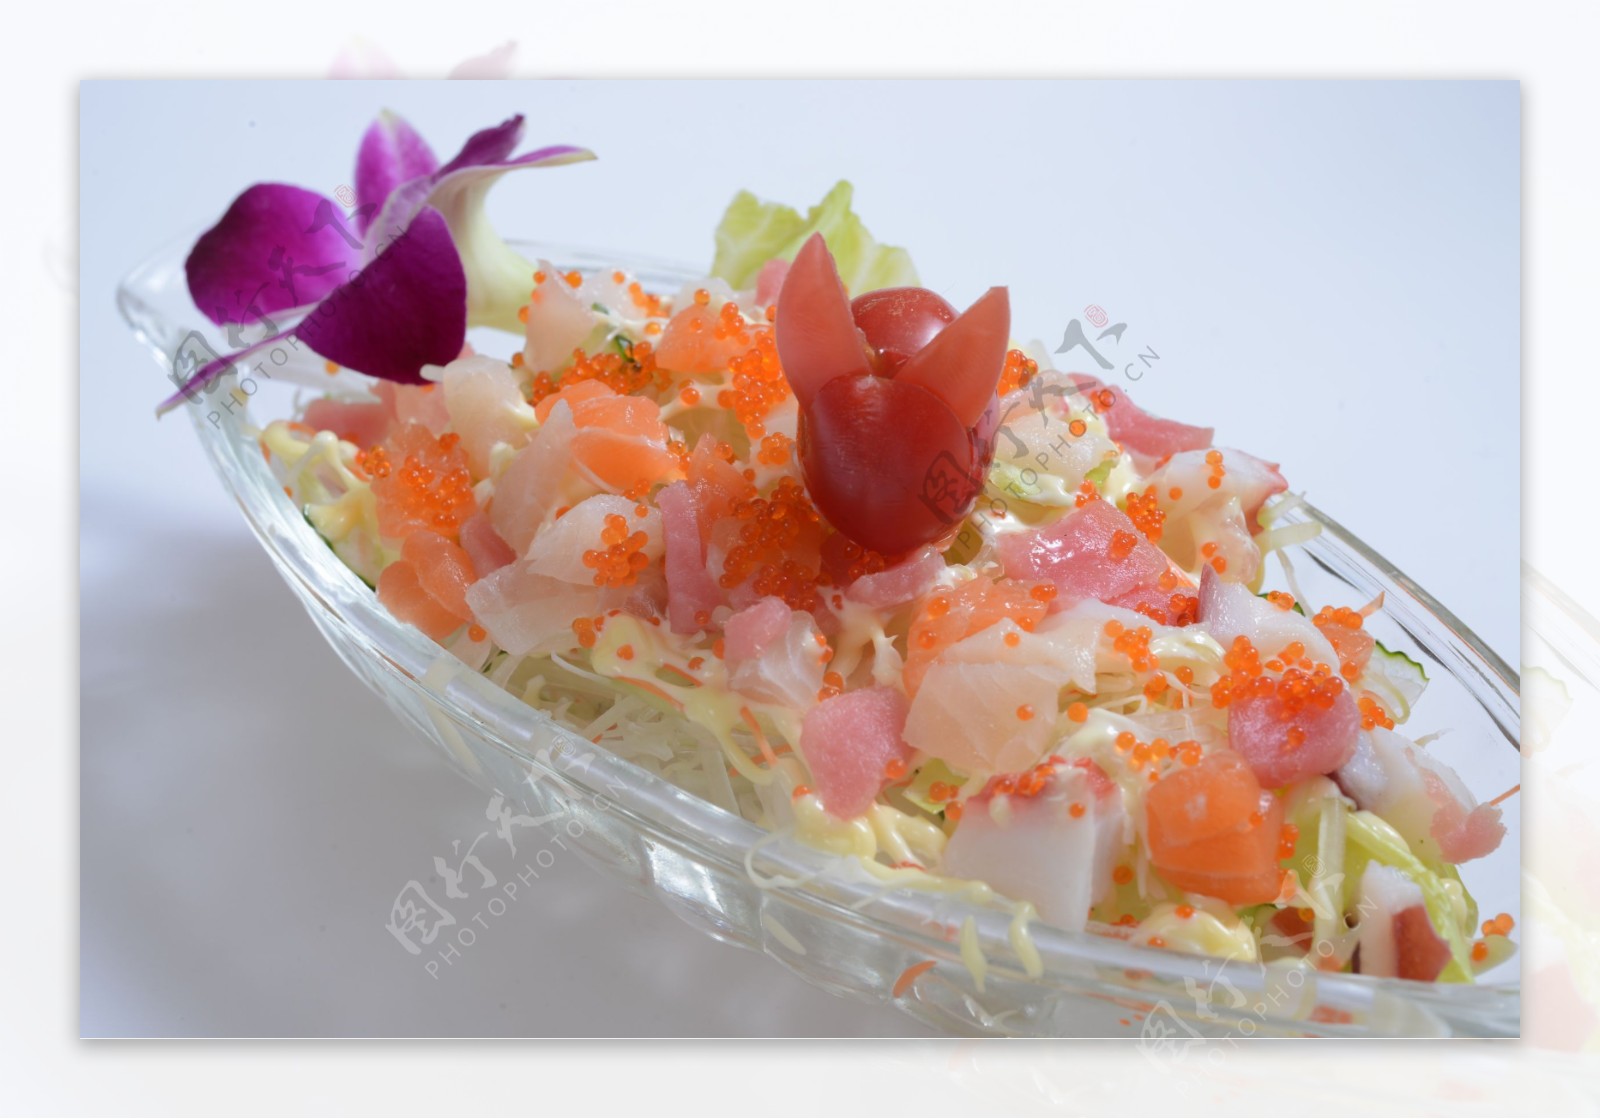 生鱼片沙拉寿司图片